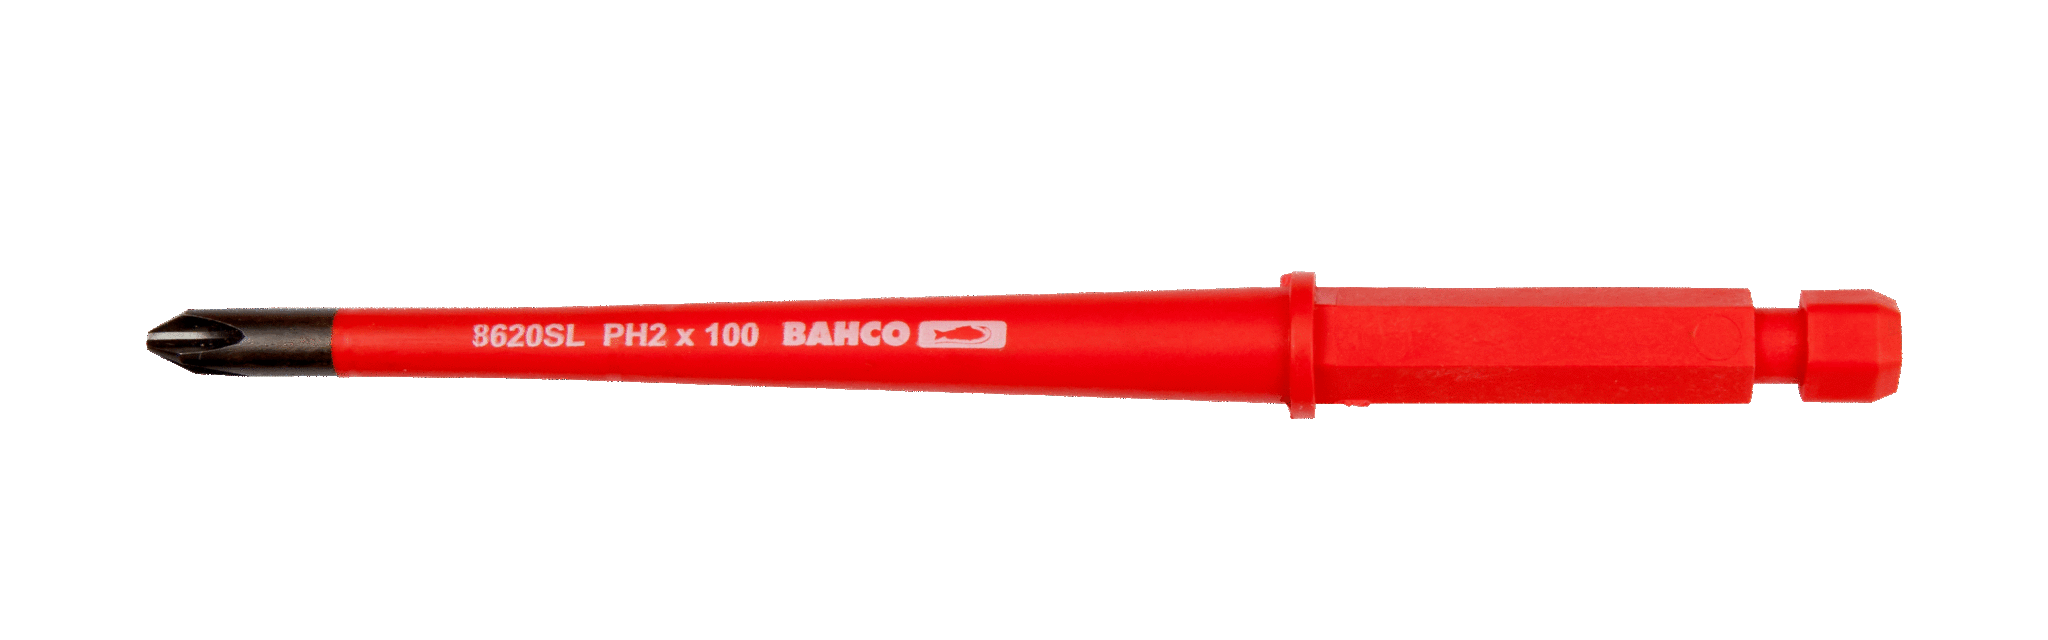 Grot wymienny izolowany SLIM kombinowany  do śrub 6.0/PH2 x 100 mm do wkrętaka 808060, 2 szt. BAHCO